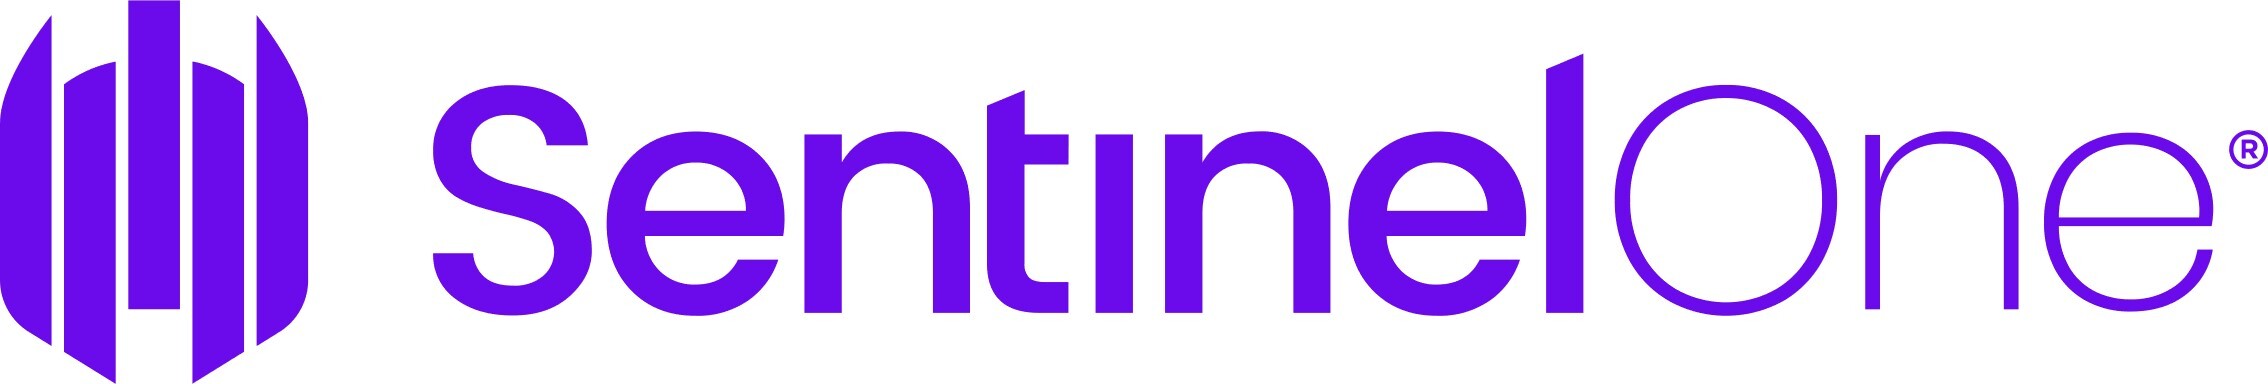 SentinelOne Logo.jpg